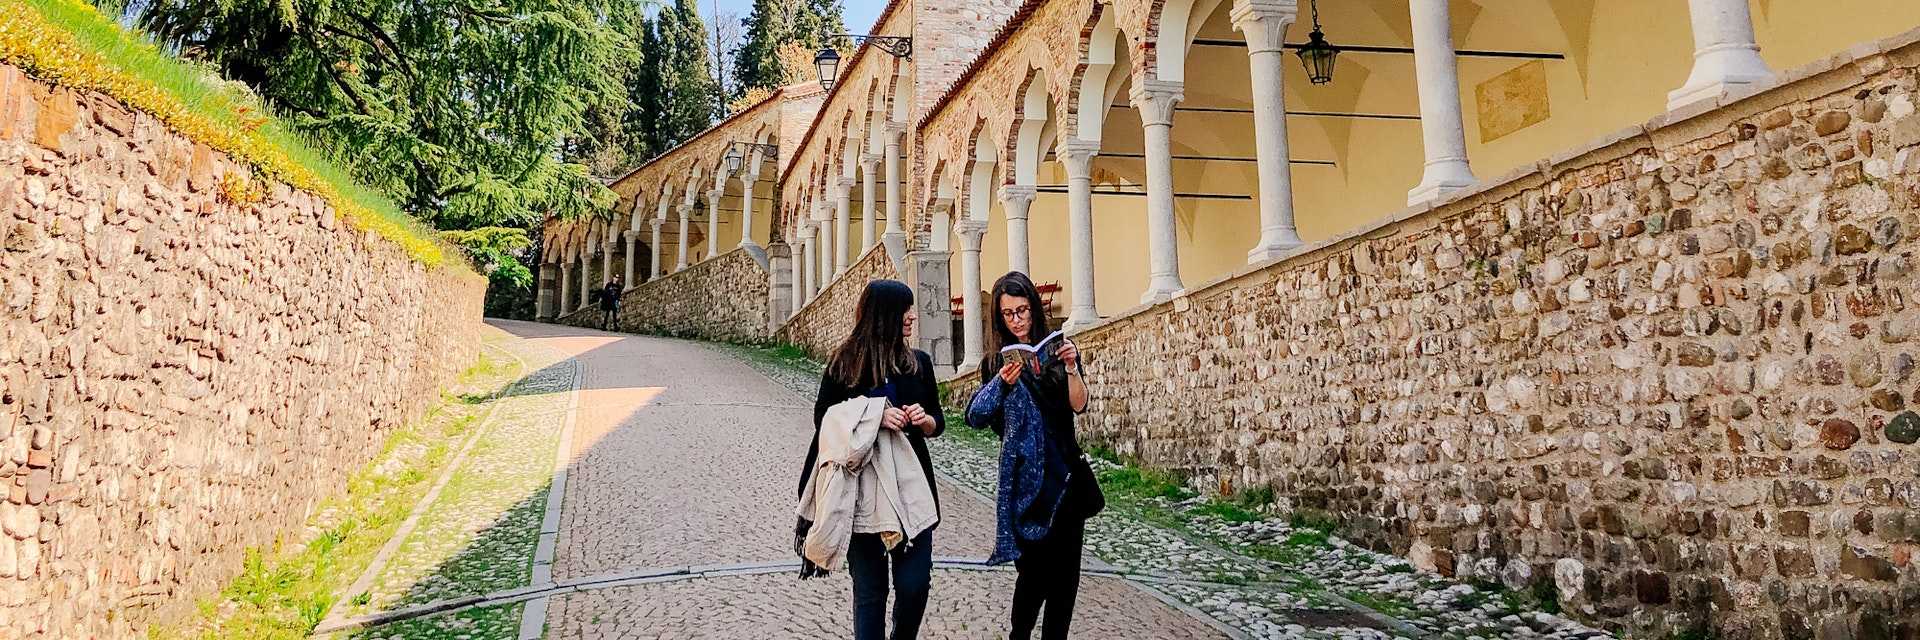 Europe, Italy, Friuli-Venezia-Giulia. Women walking in the patio near the arcades of the Piazzale del Castello in Udine.
1152464159
piazzale